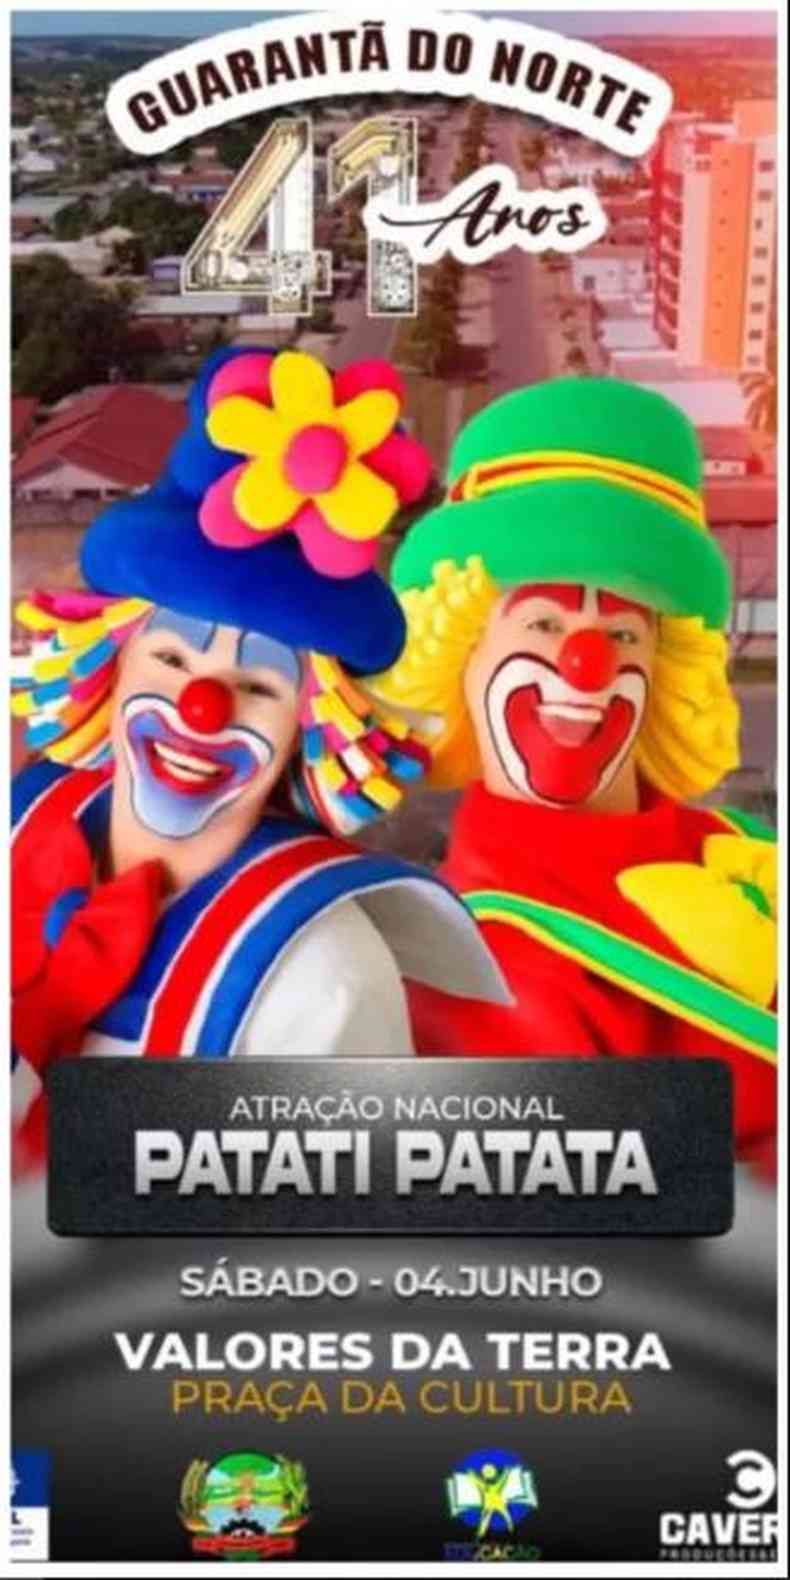 Prefeitura anunciou show da dupla Patati Patat nas redes sociais